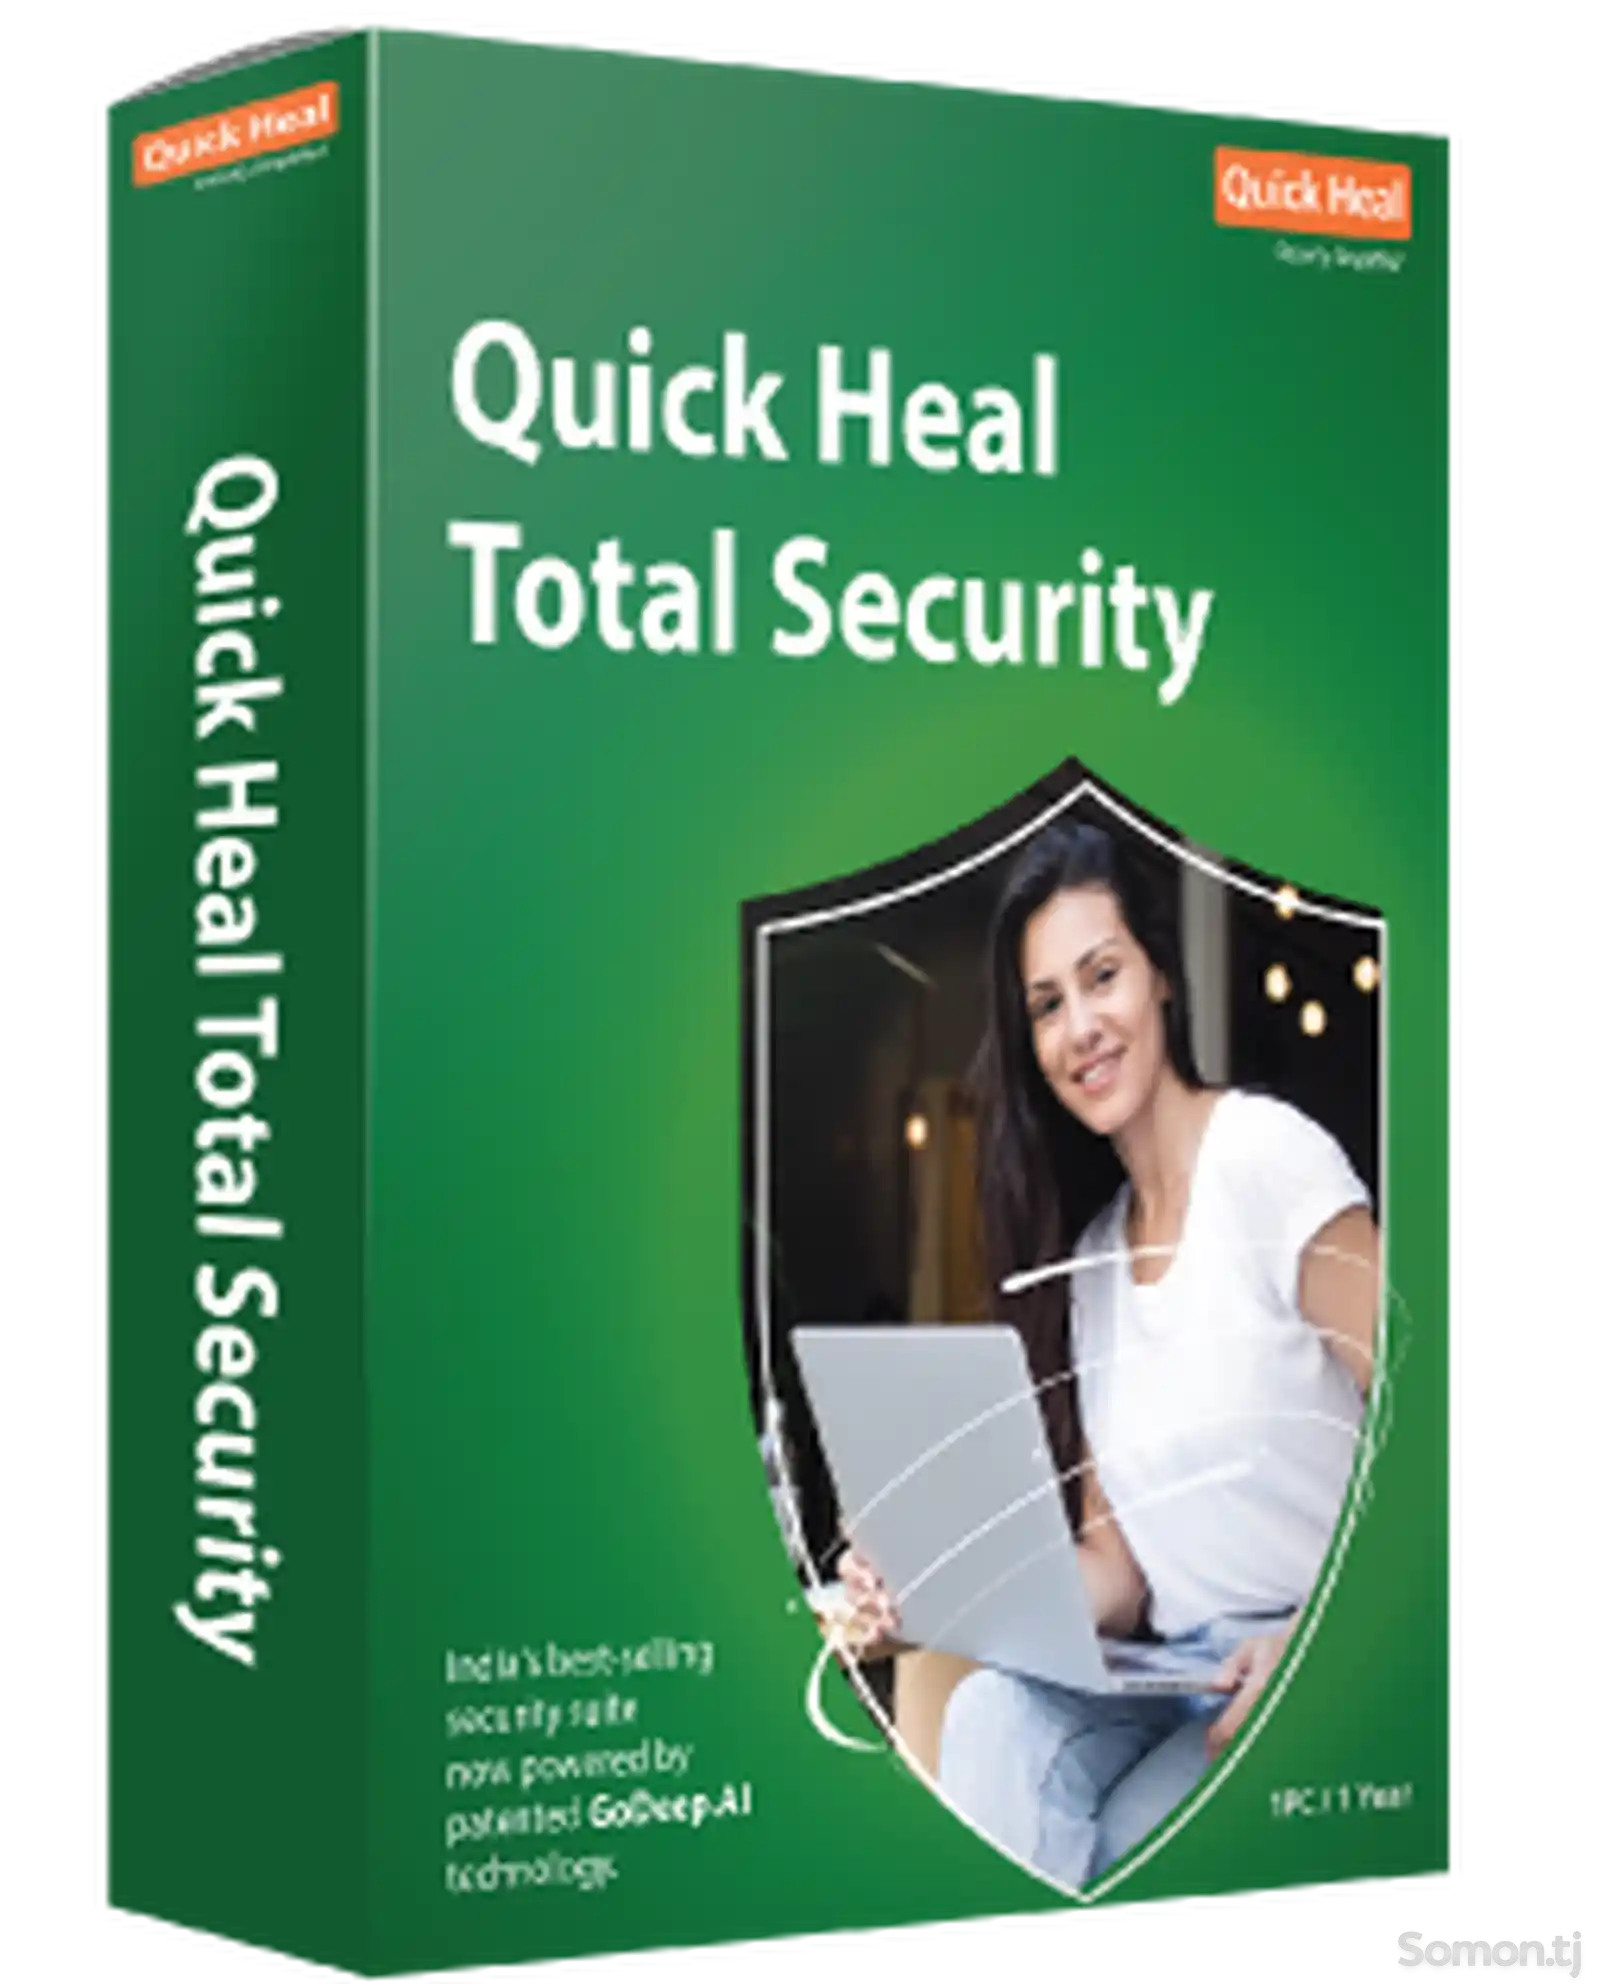 Quick Heal Total Security - иҷозатнома барои 1 роёна, 1 сол